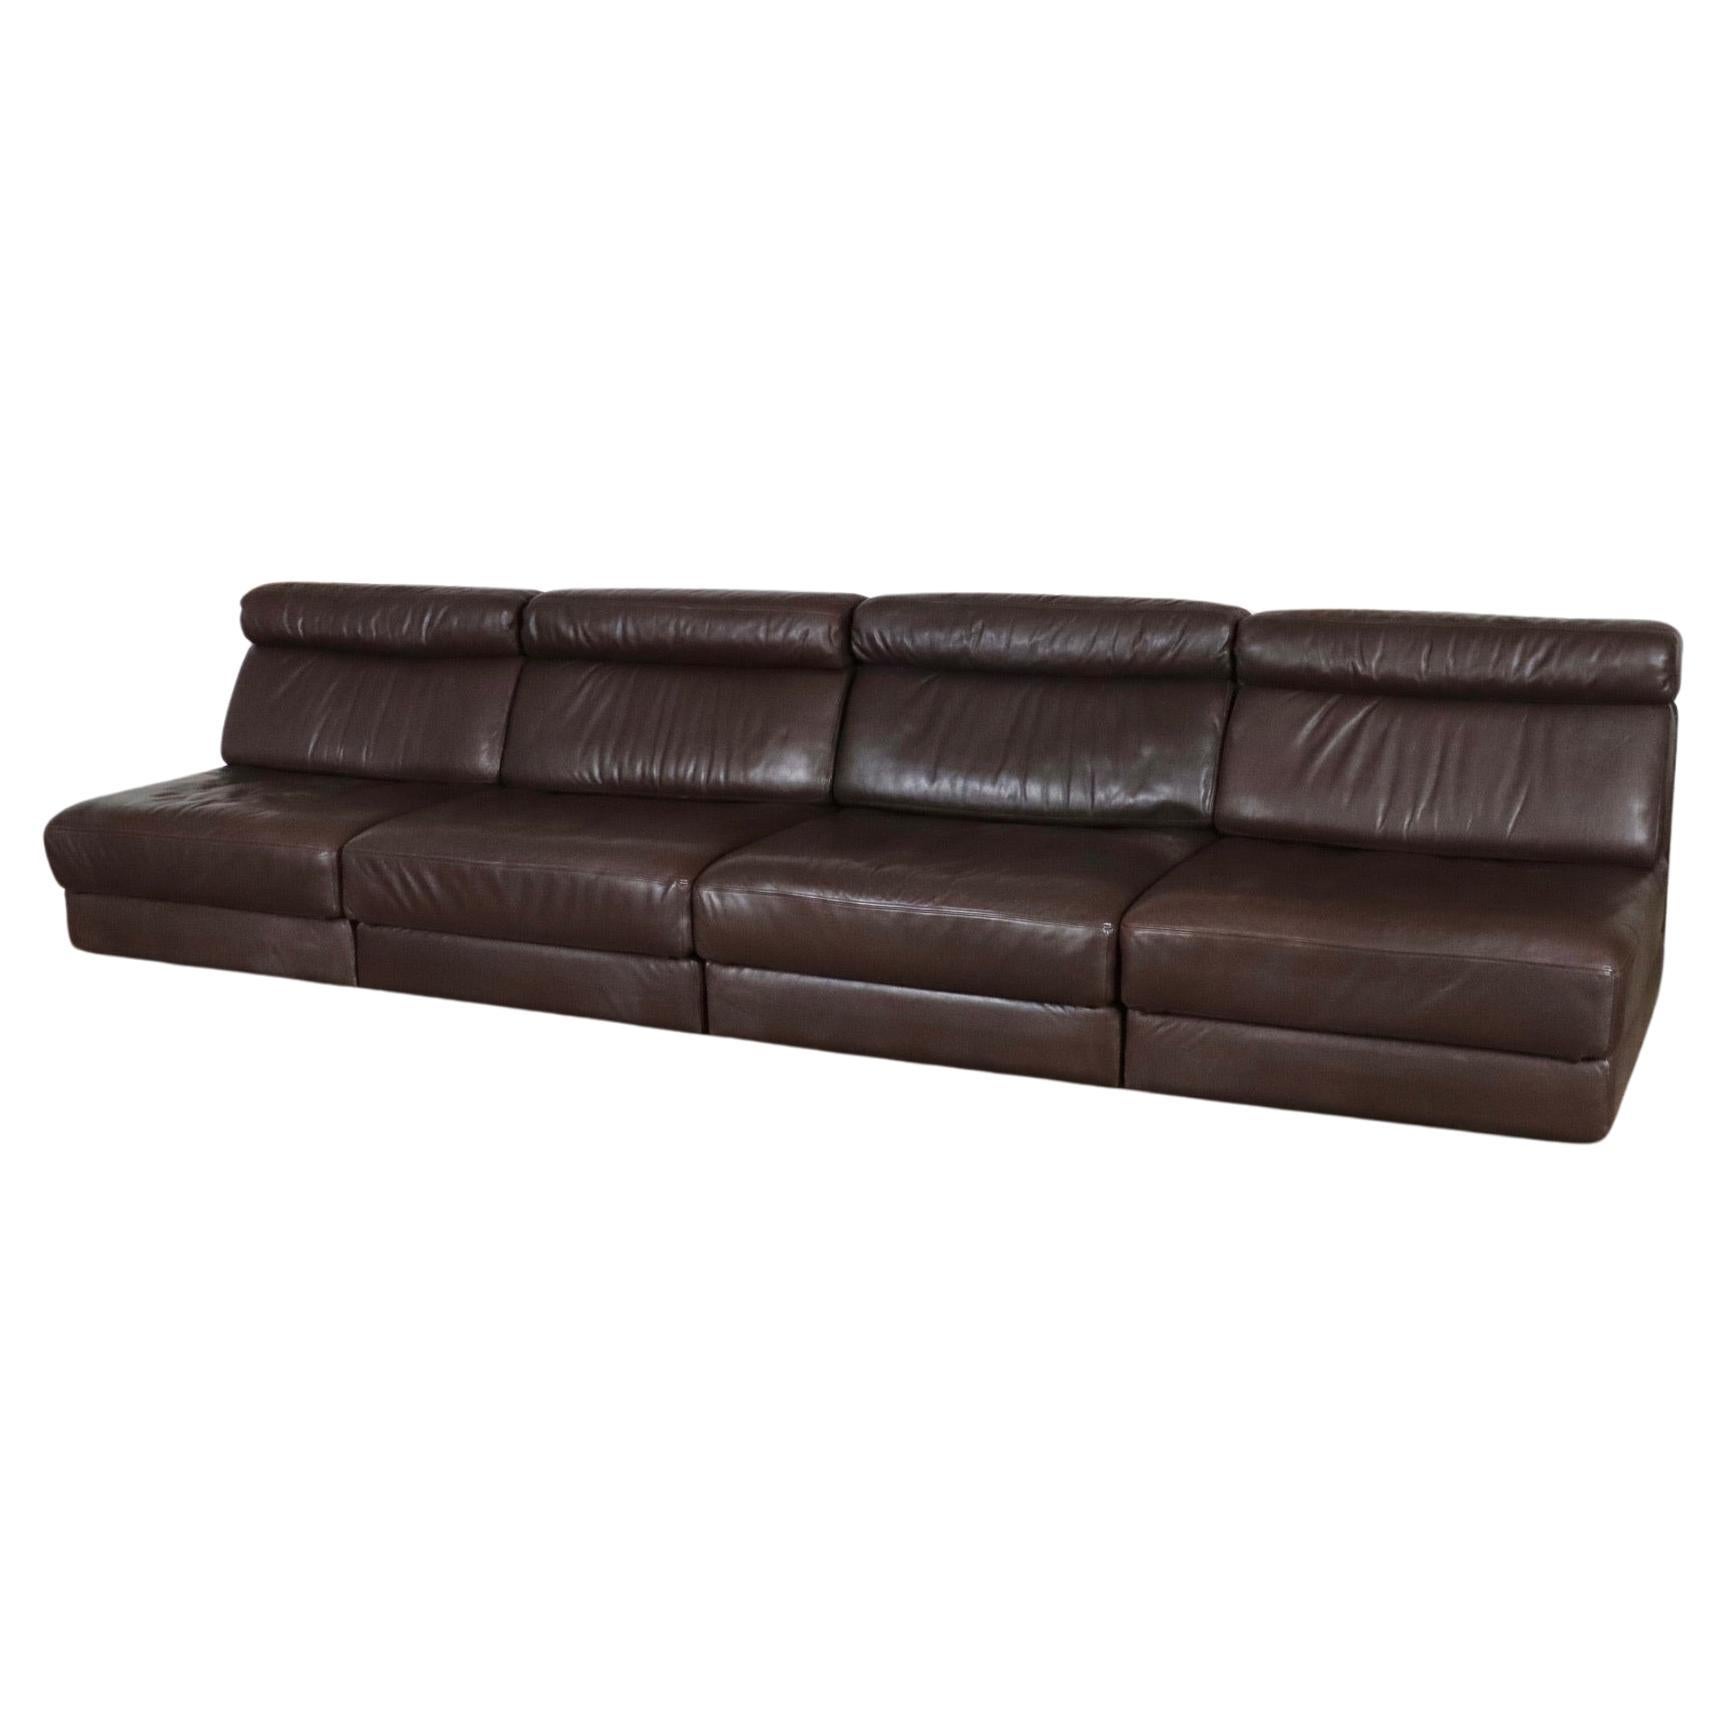 De Sede DS-77 Sofa Bed In Brown Leather, Switzerland 1970s